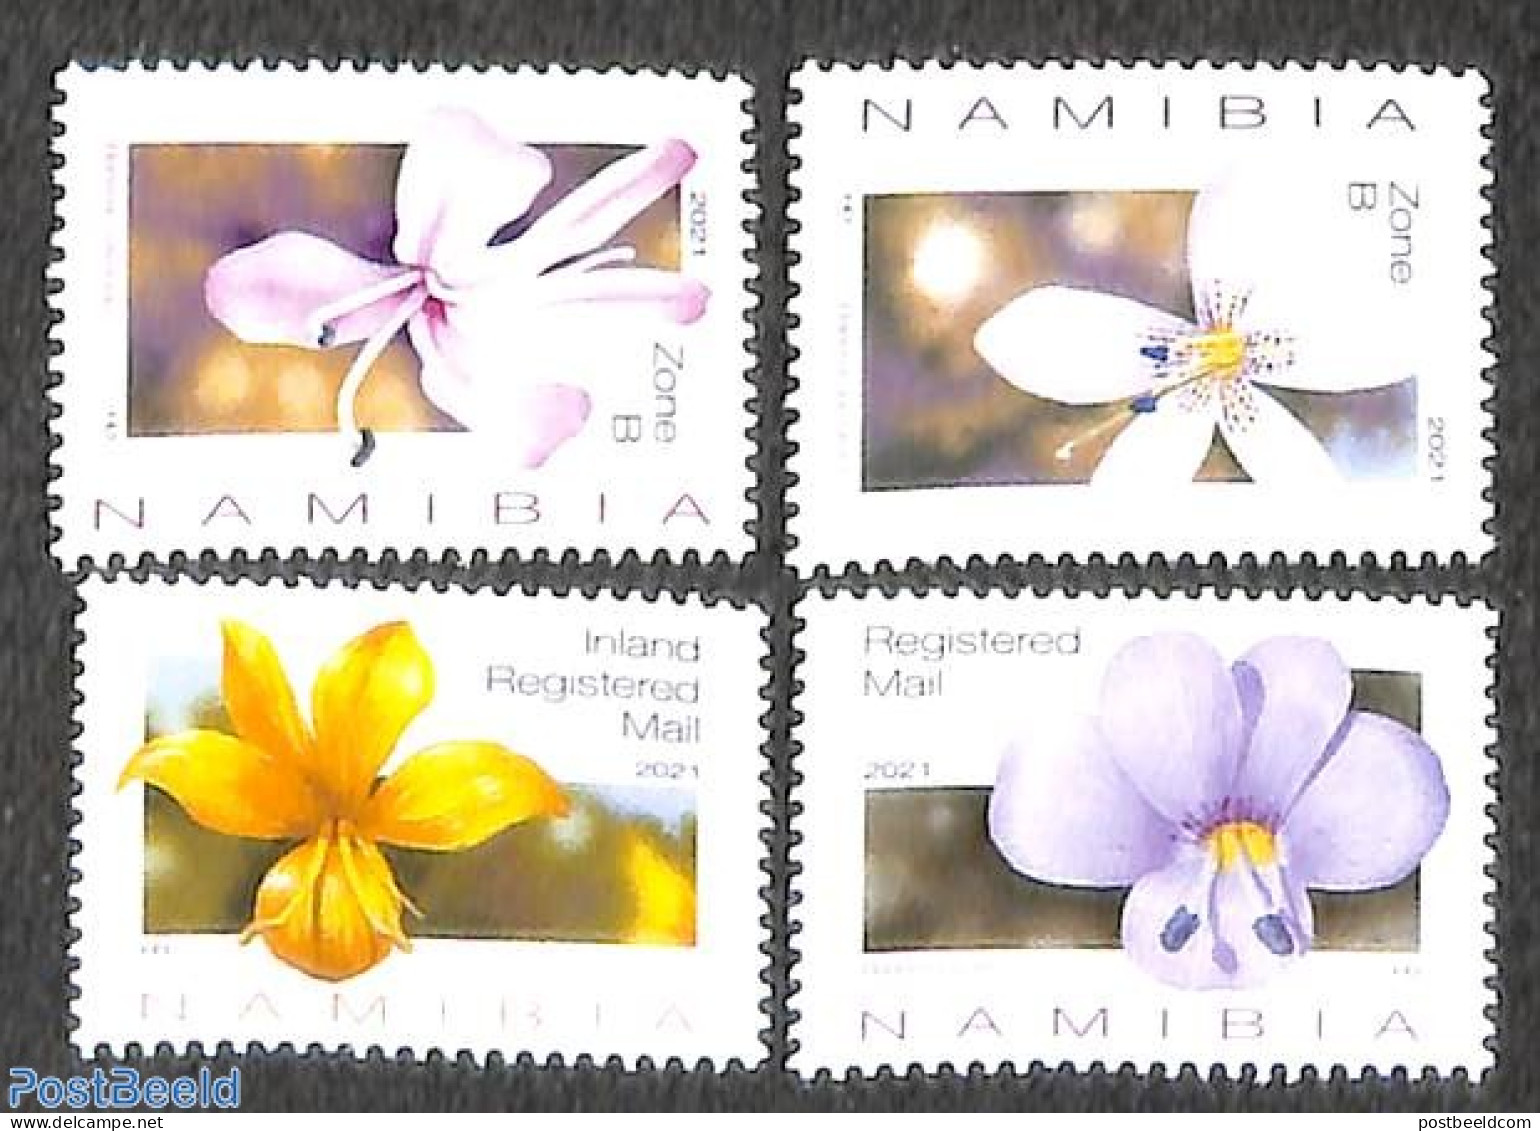 Namibia 2021 Flowers 4v, Mint NH, Nature - Flowers & Plants - Namibië (1990- ...)